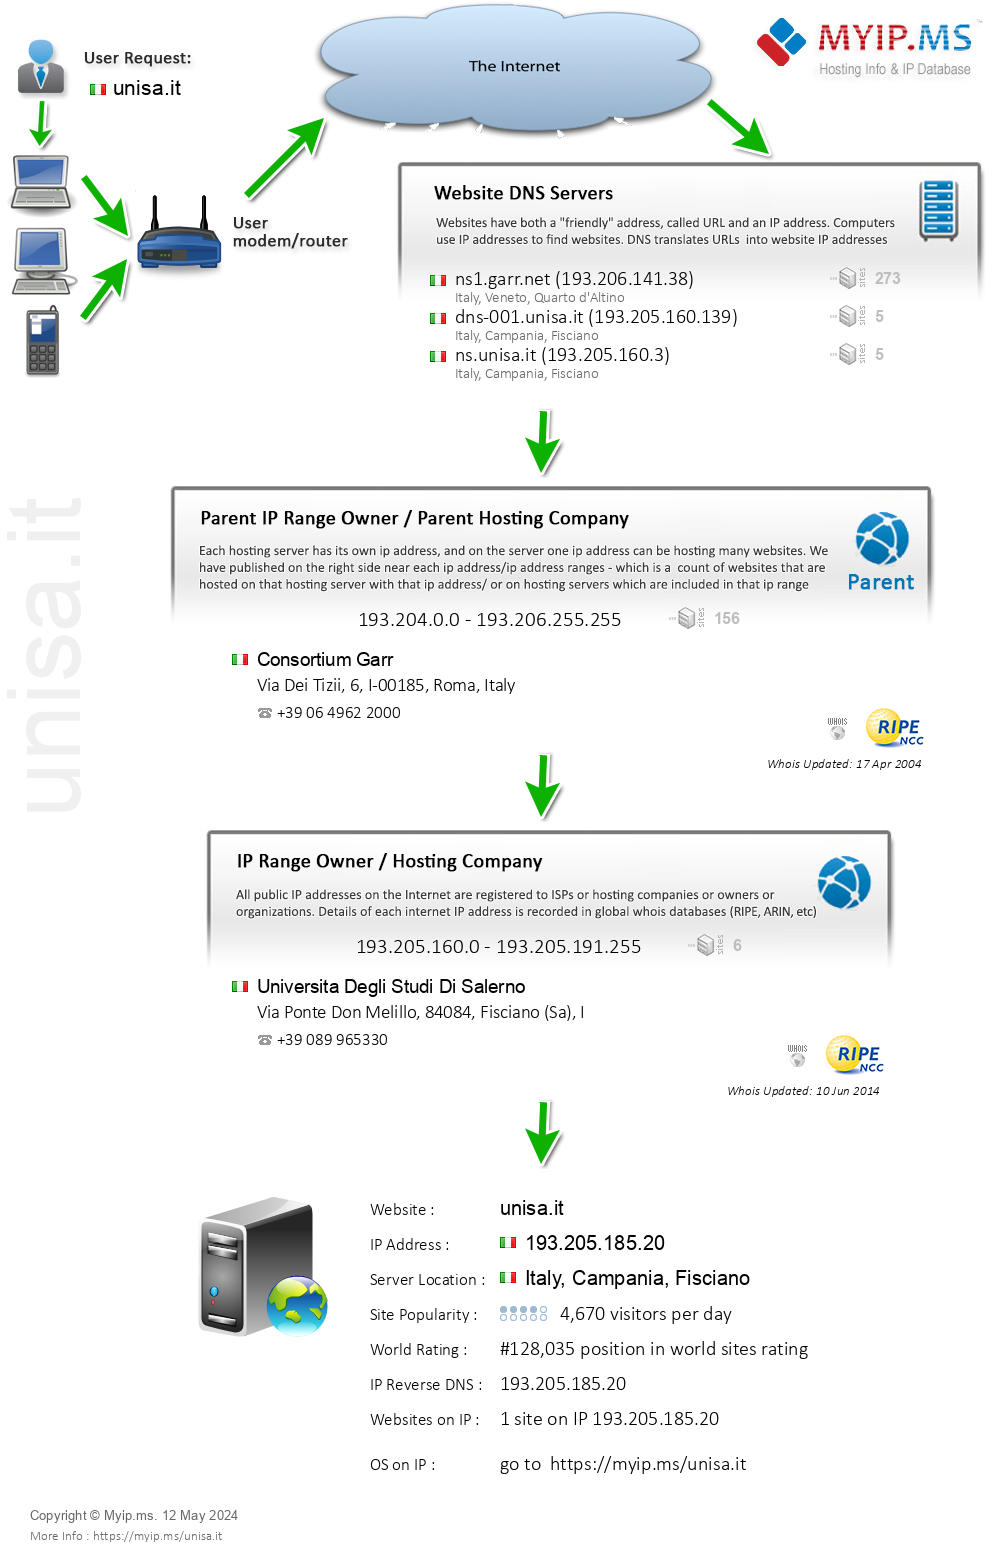 Unisa.it - Website Hosting Visual IP Diagram